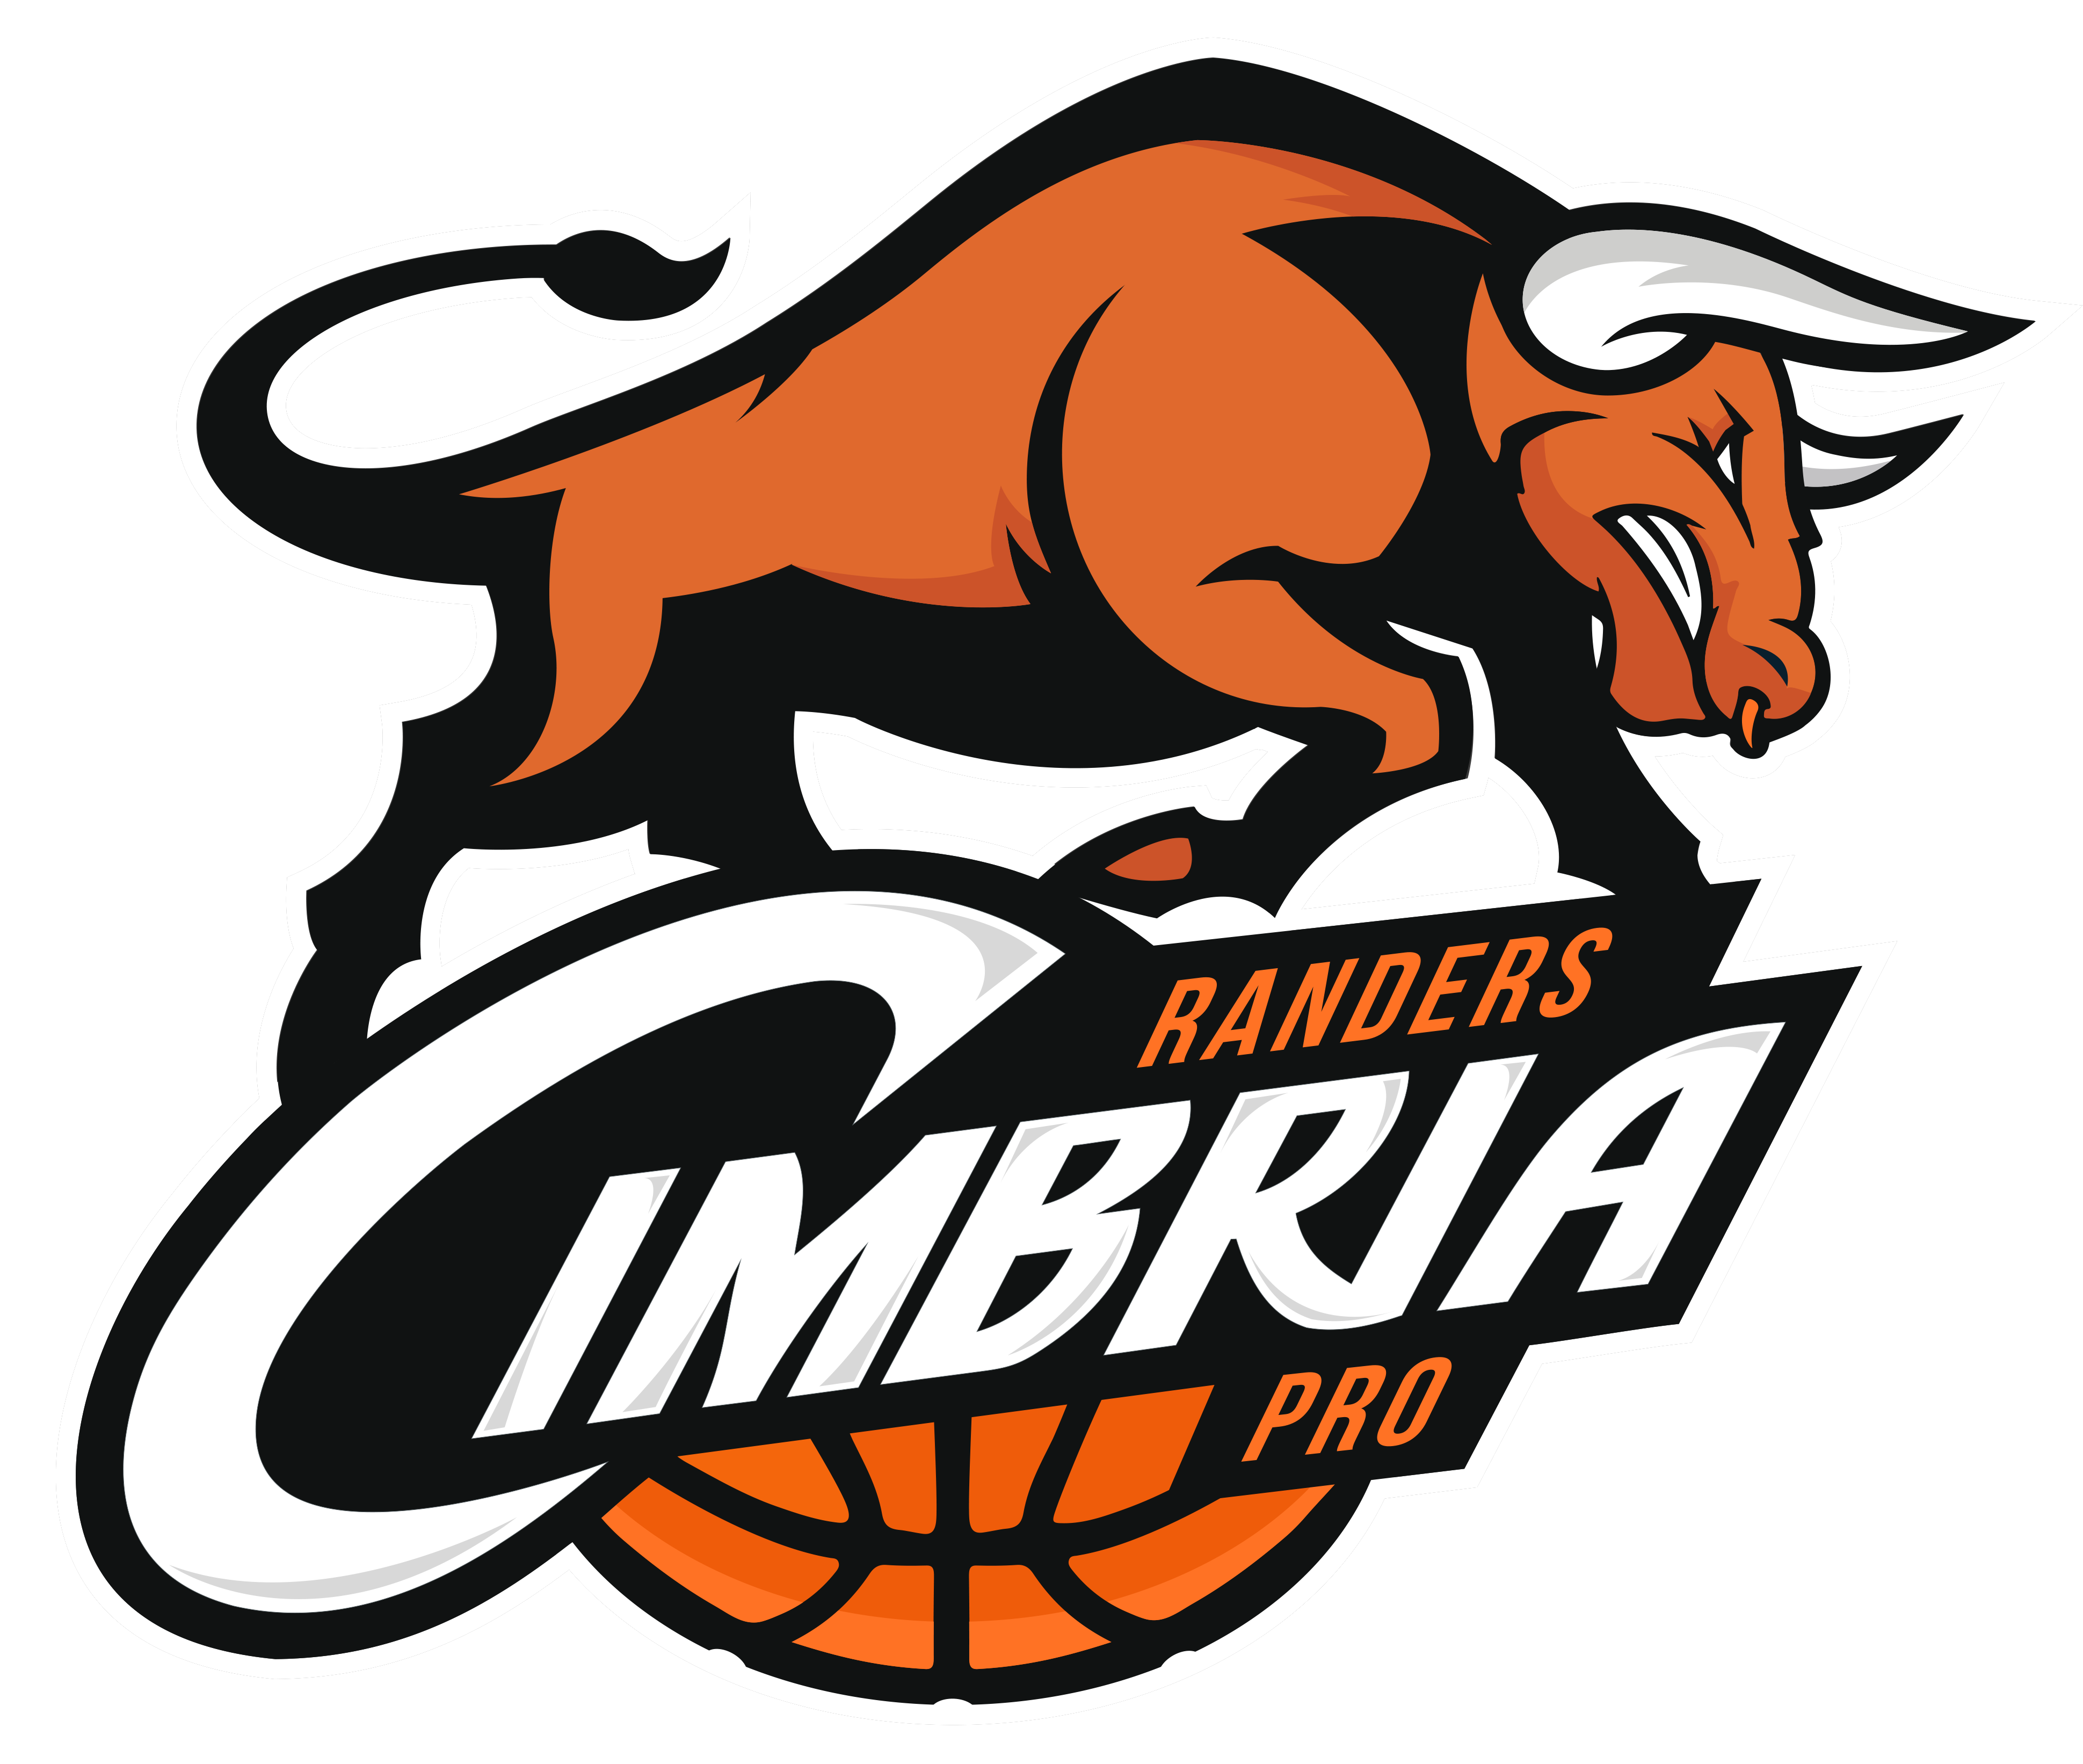 Cimbria – Nyt logo